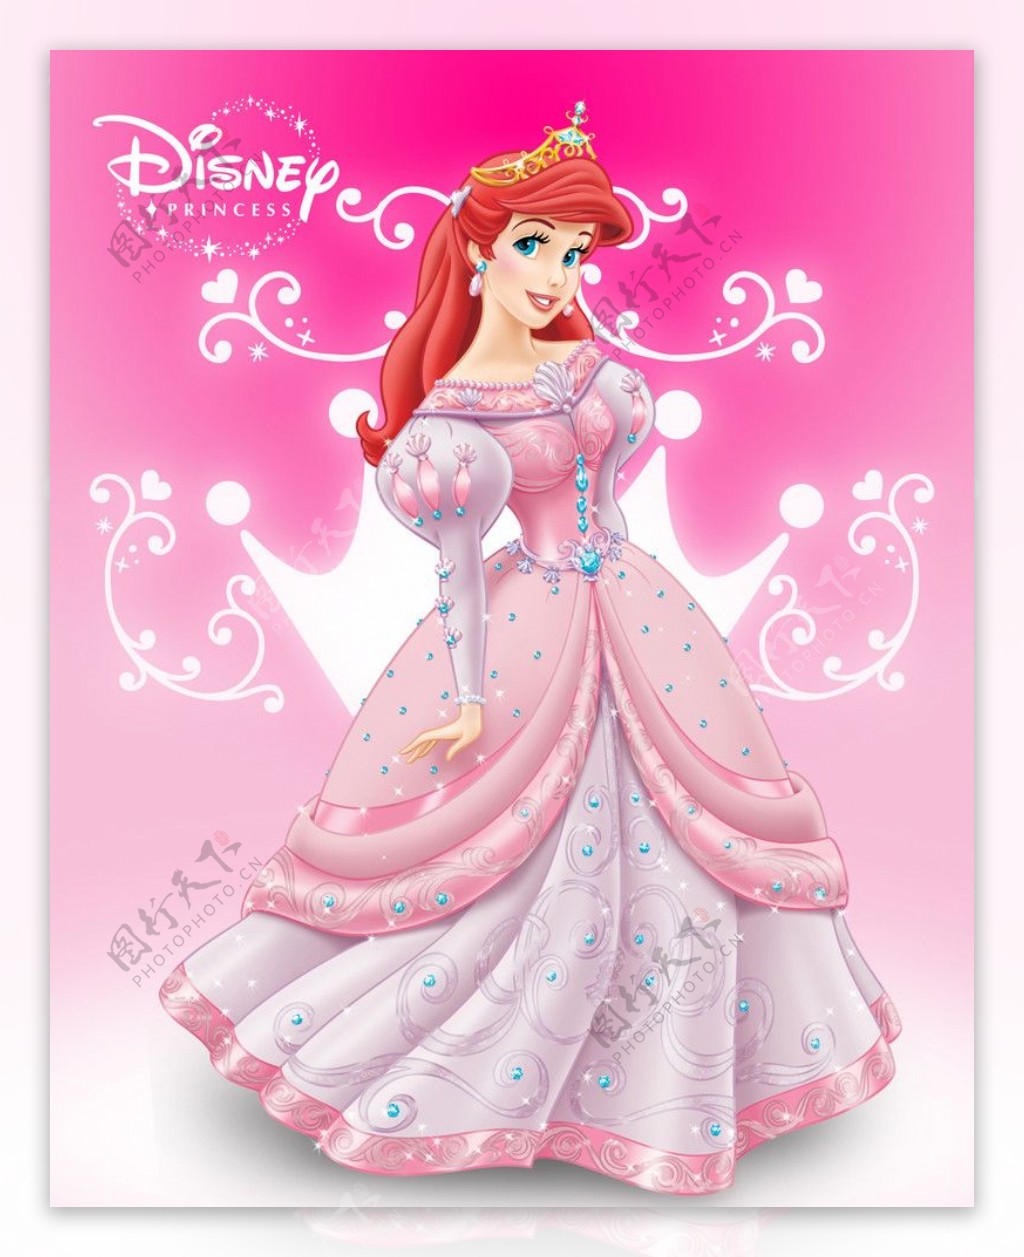 盛装美人鱼公主最新迪士尼海报爱丽儿图片